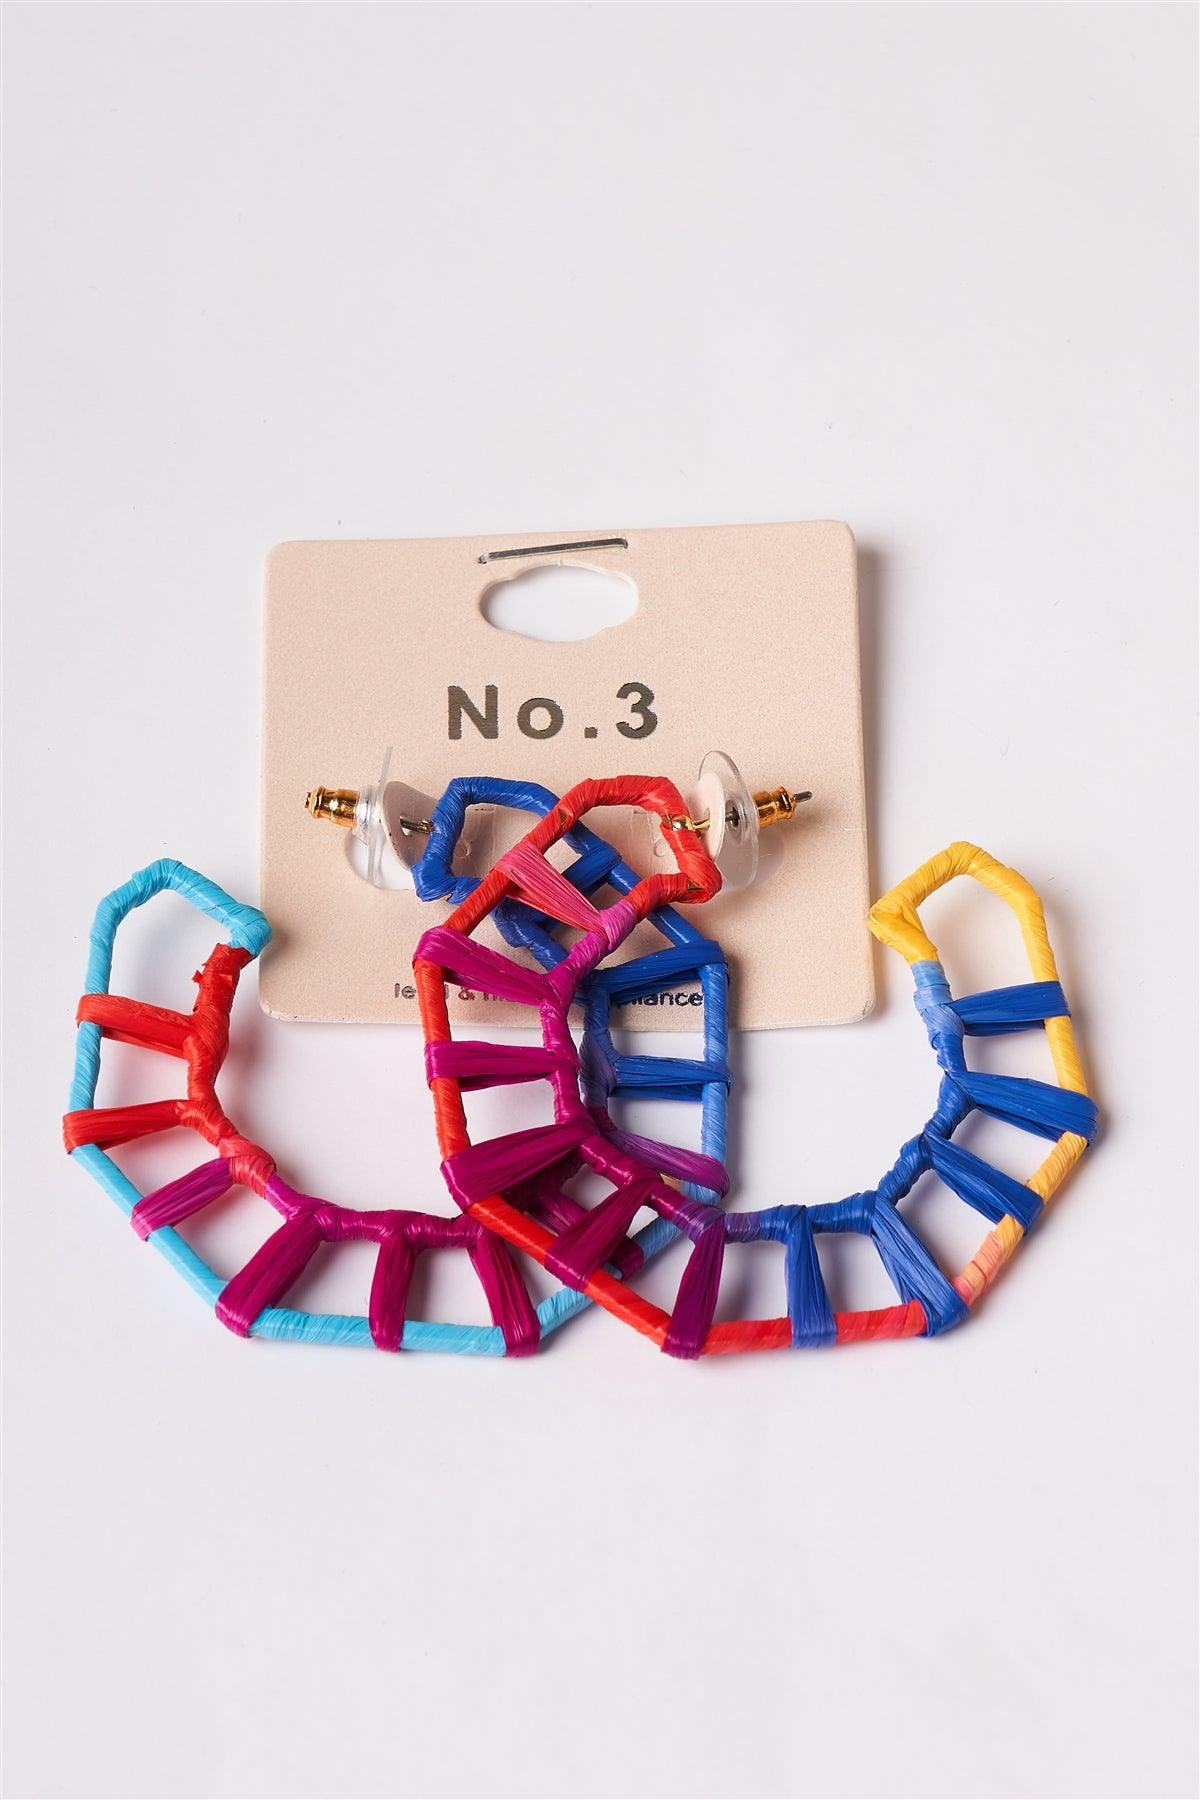 Geo Octagon Raffia Multi Colored Hoop Earrings /1 Pair